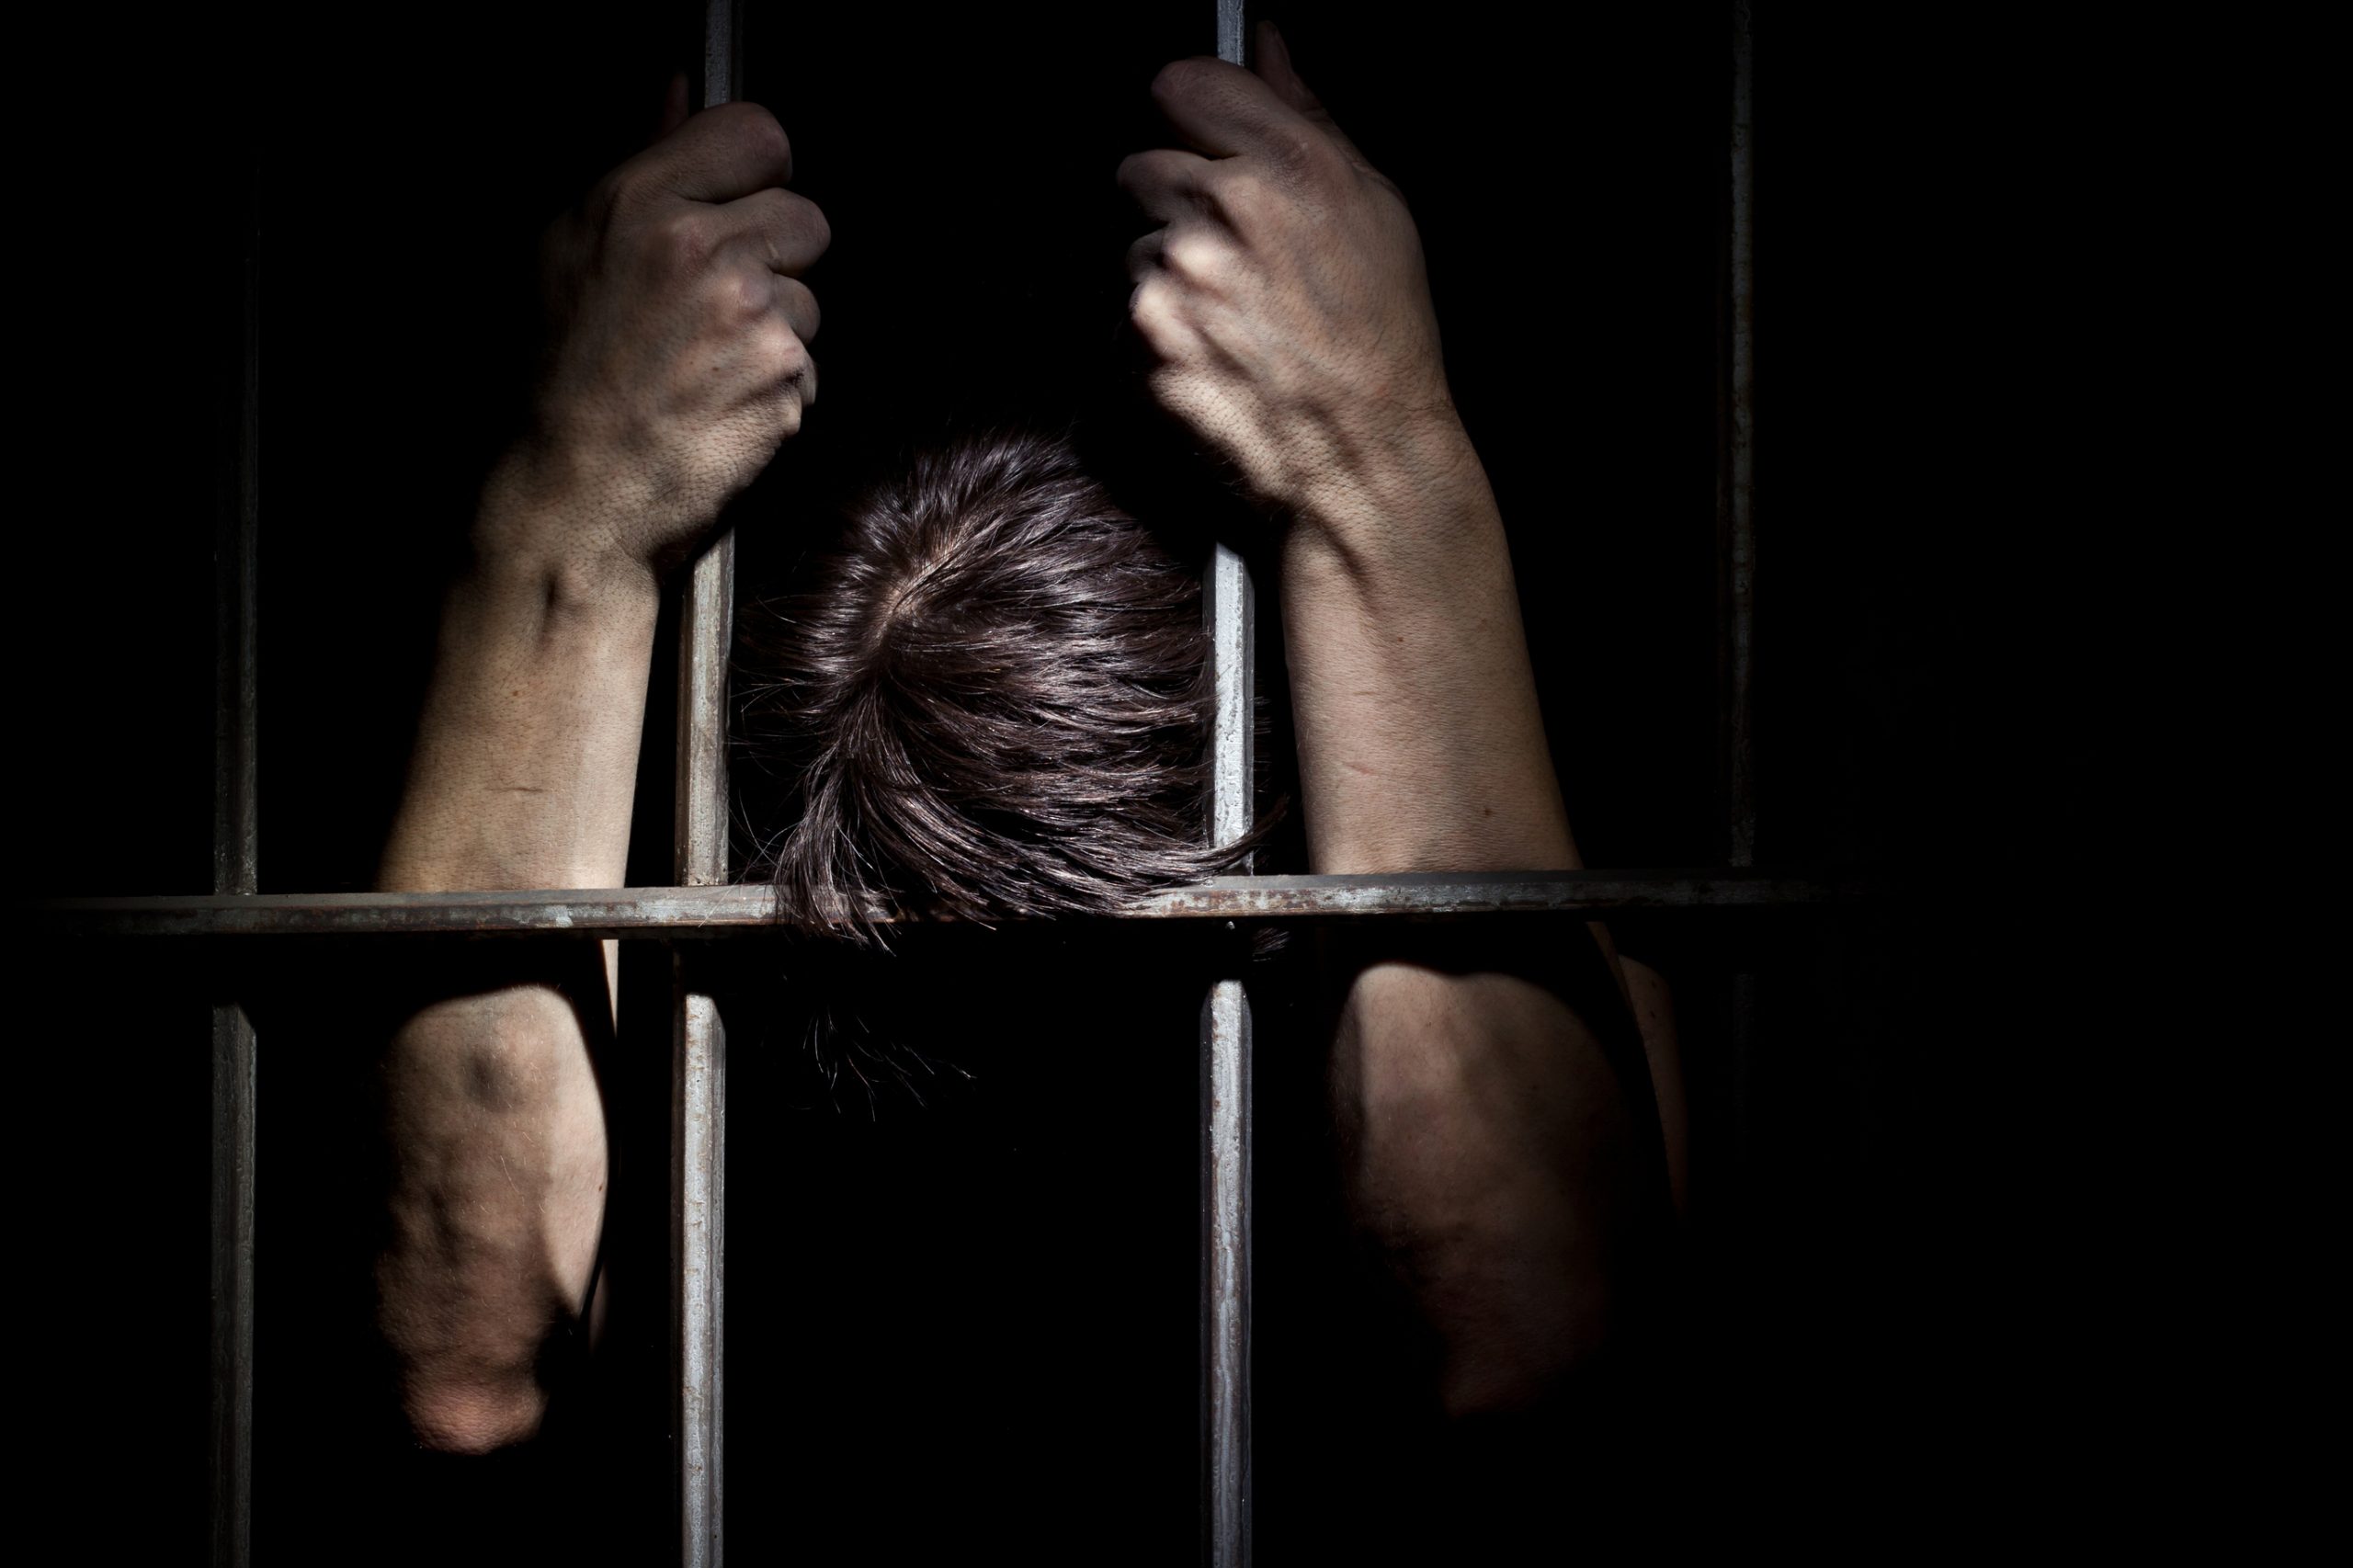 Provedoria de Justiça envia ao MP oito casos de agressão a reclusos por guardas prisionais